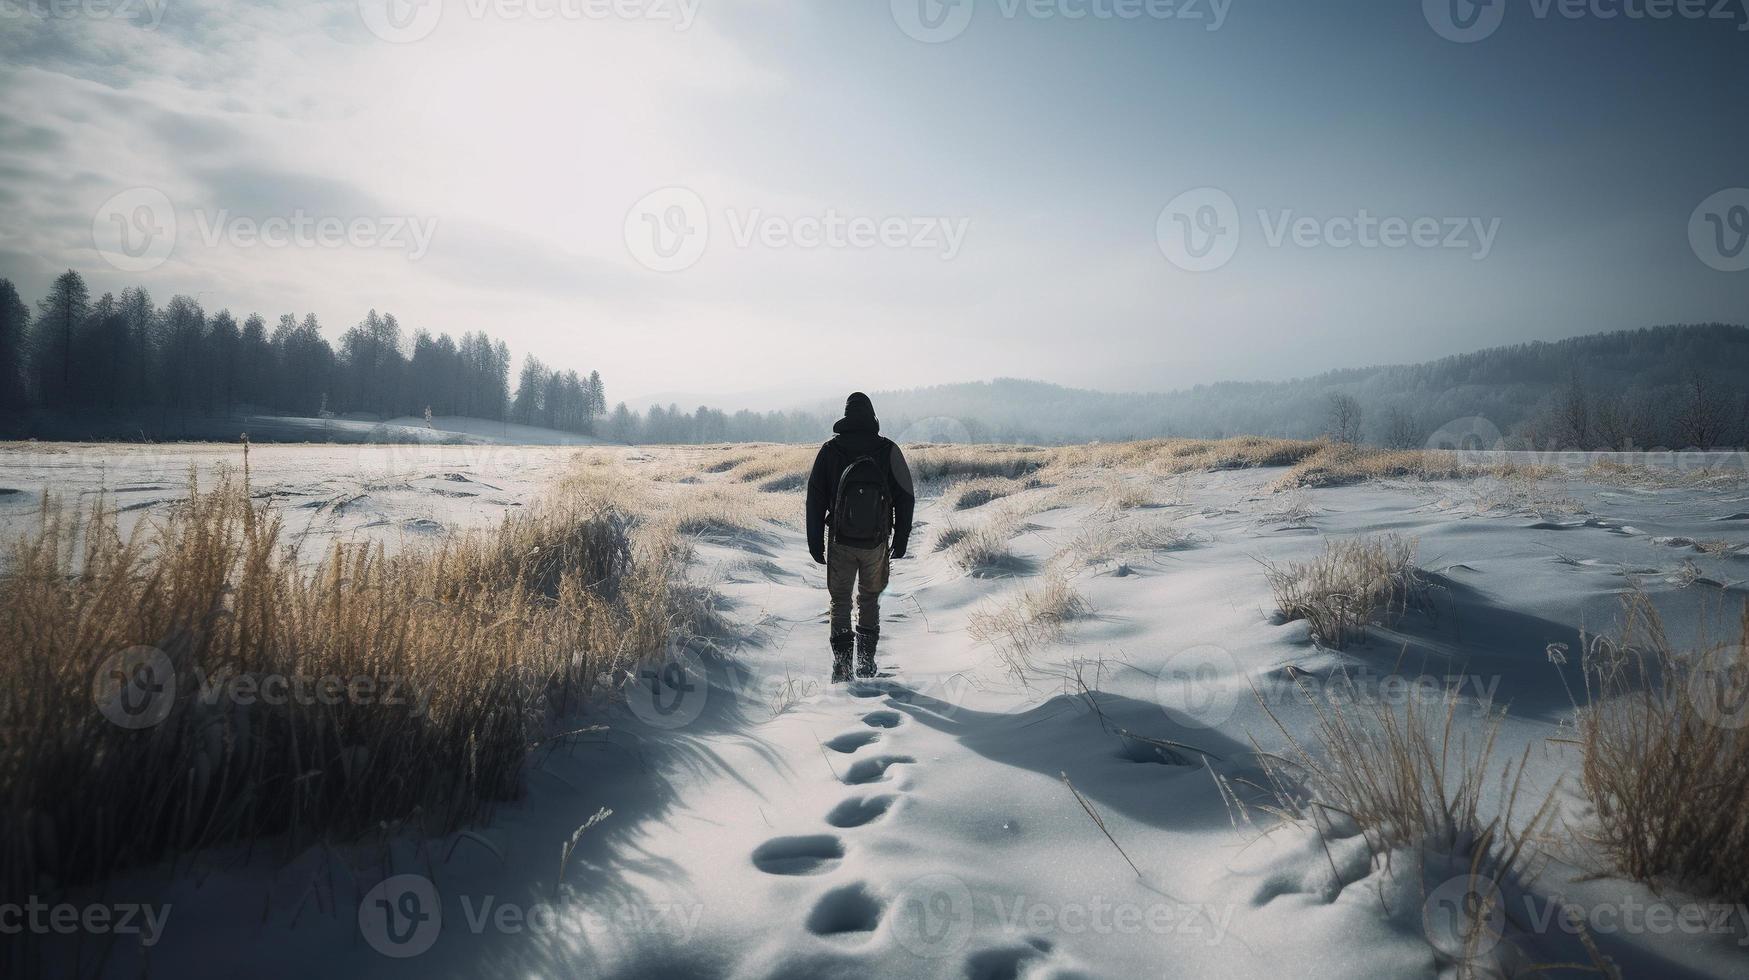 wandelaar met rugzak wandelen Aan besneeuwd spoor in winter bergen. reizen en avontuur concept.winter landschap foto